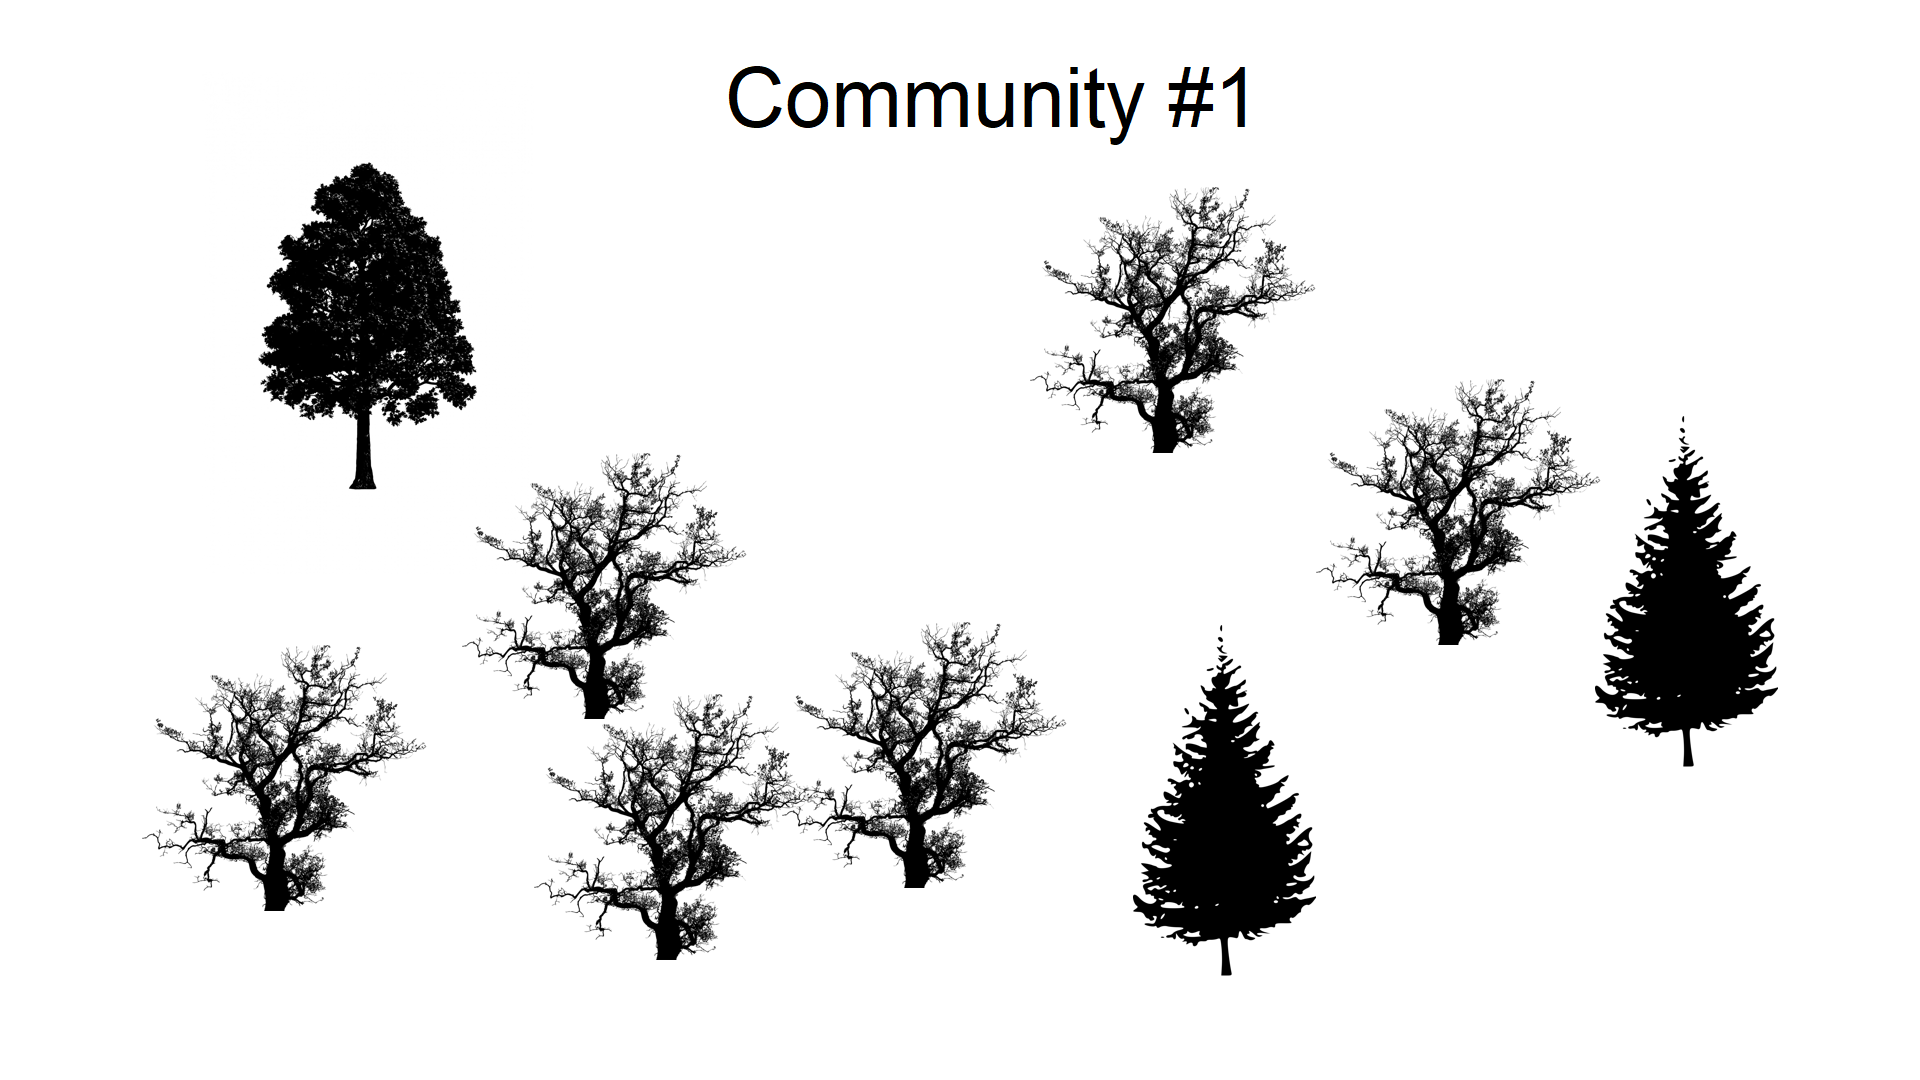 La comunidad arbórea #1 tiene seis individuos de una especie de ramificación irregular, un individuo con hojas densamente empaquetadas y dos coníferas.